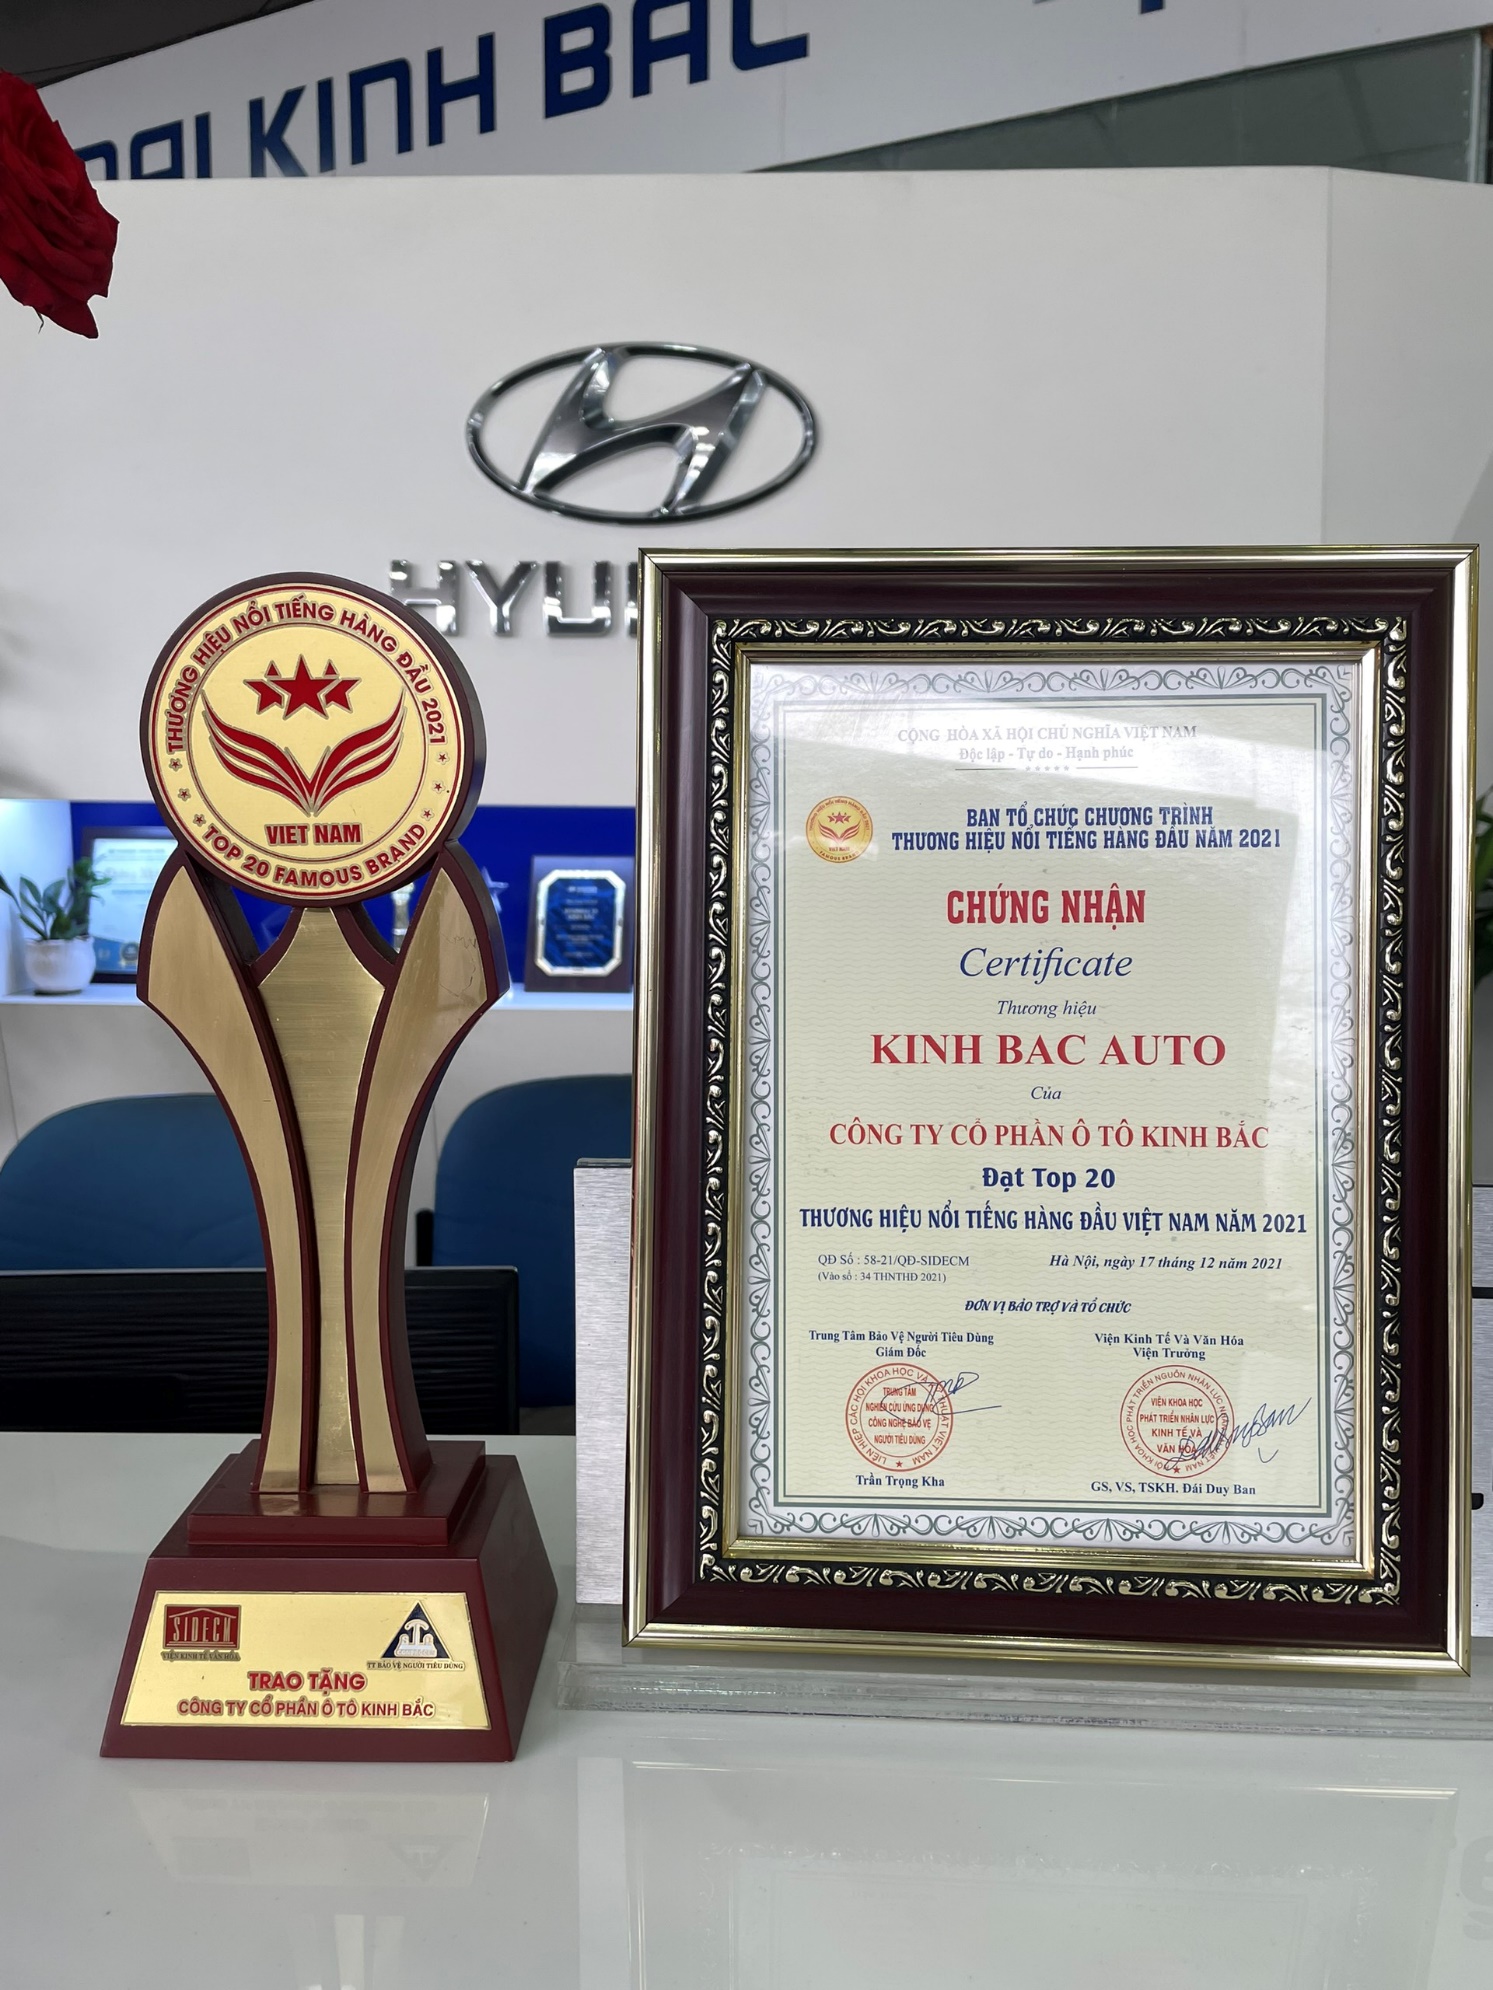 Hyundai Kinh Bắc được trao danh hiệu “Top 20 thương hiệu nổi tiếng hàng đầu Việt Nam năm 2021”